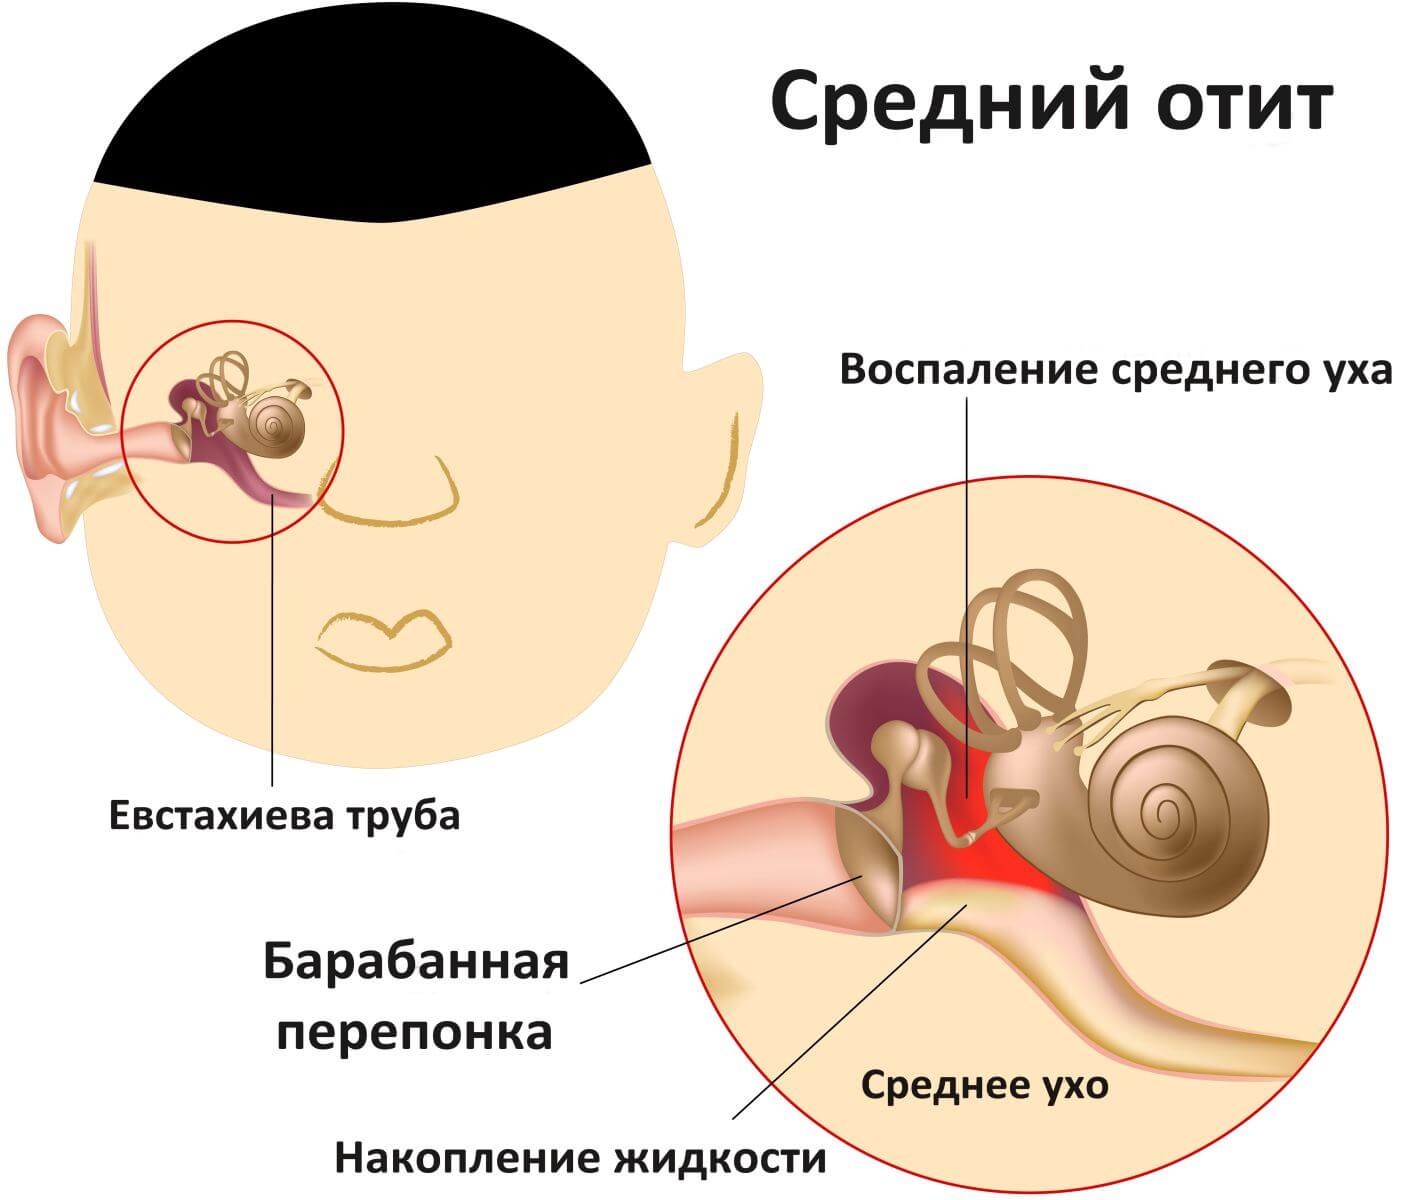 Неприятный запах из уха у грудничка: возможные причины его появления у ребенка и способы устранения